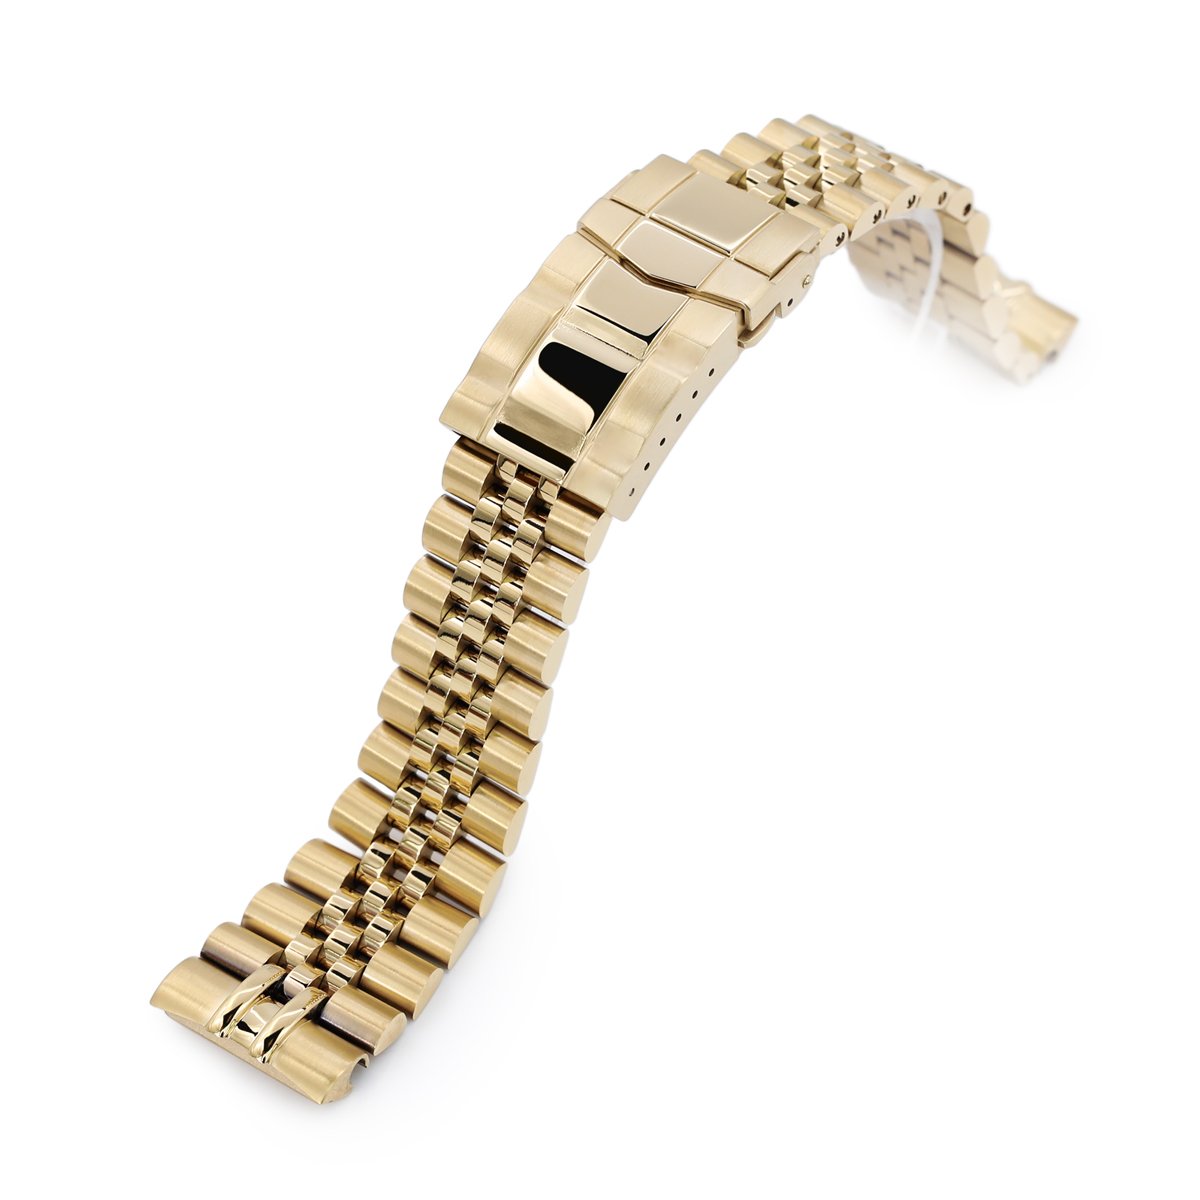 gold bracelet louis